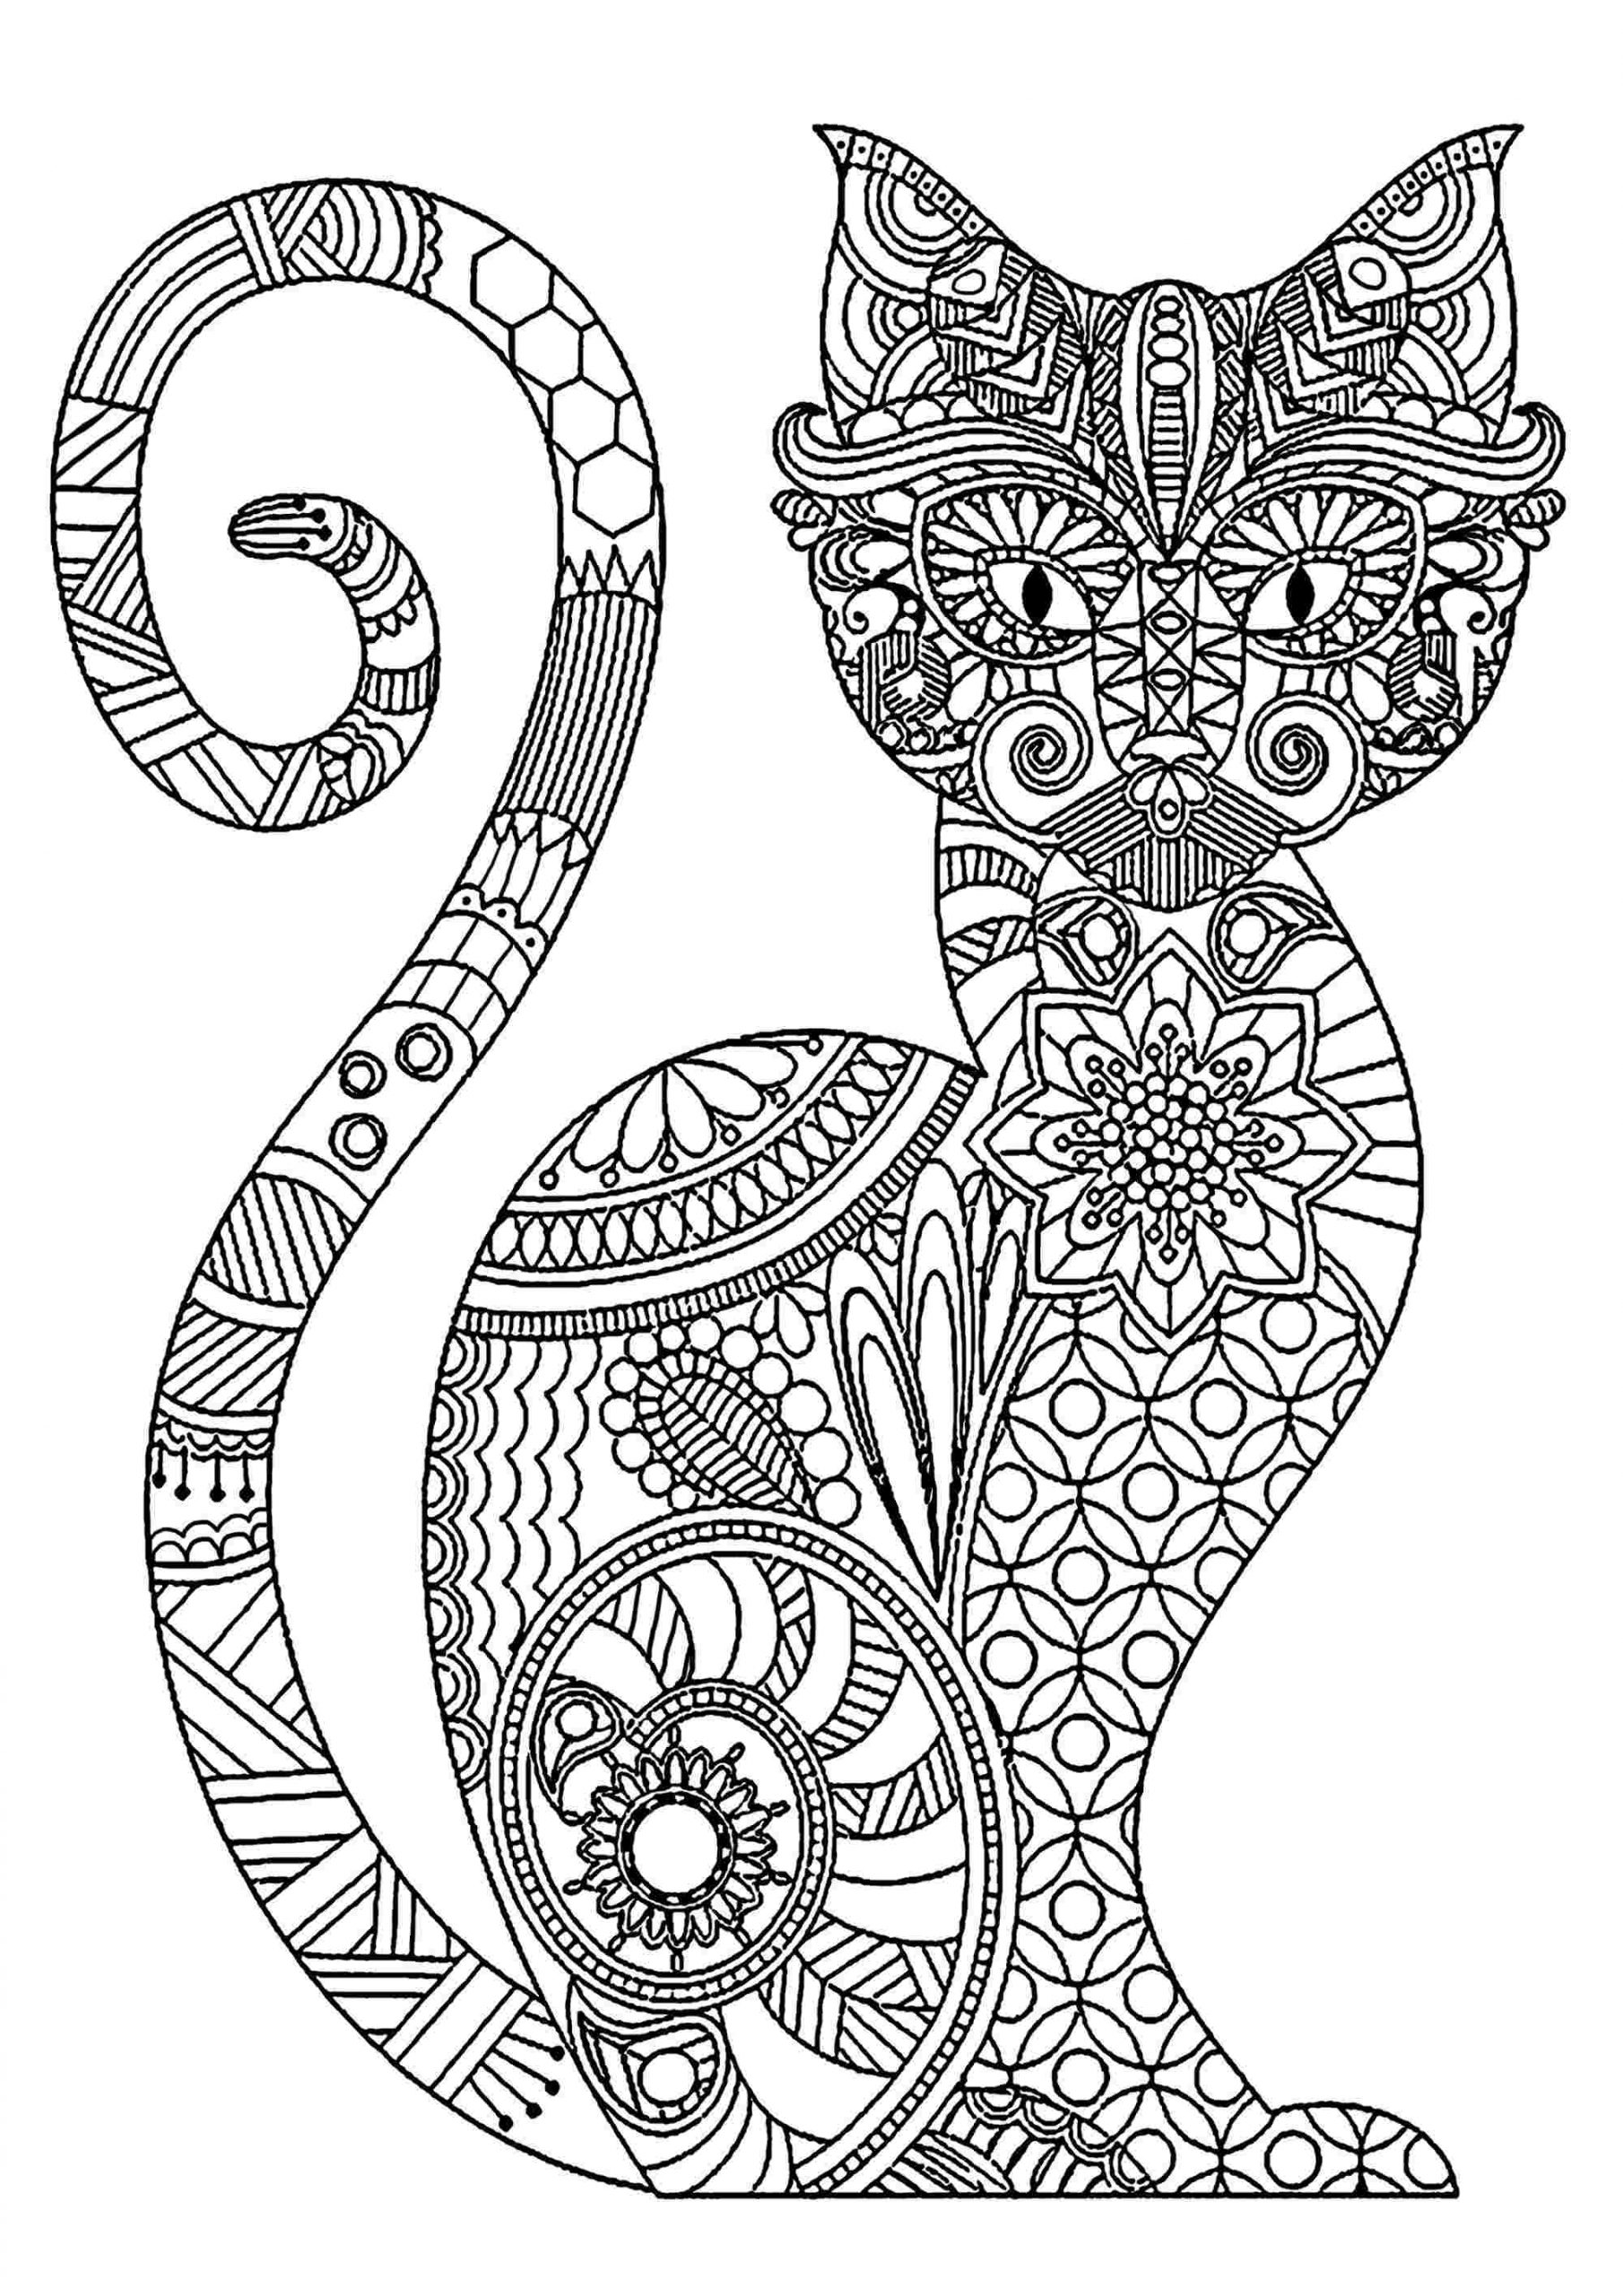 Tranh tô màu chú mèo với họa tiết quý phái